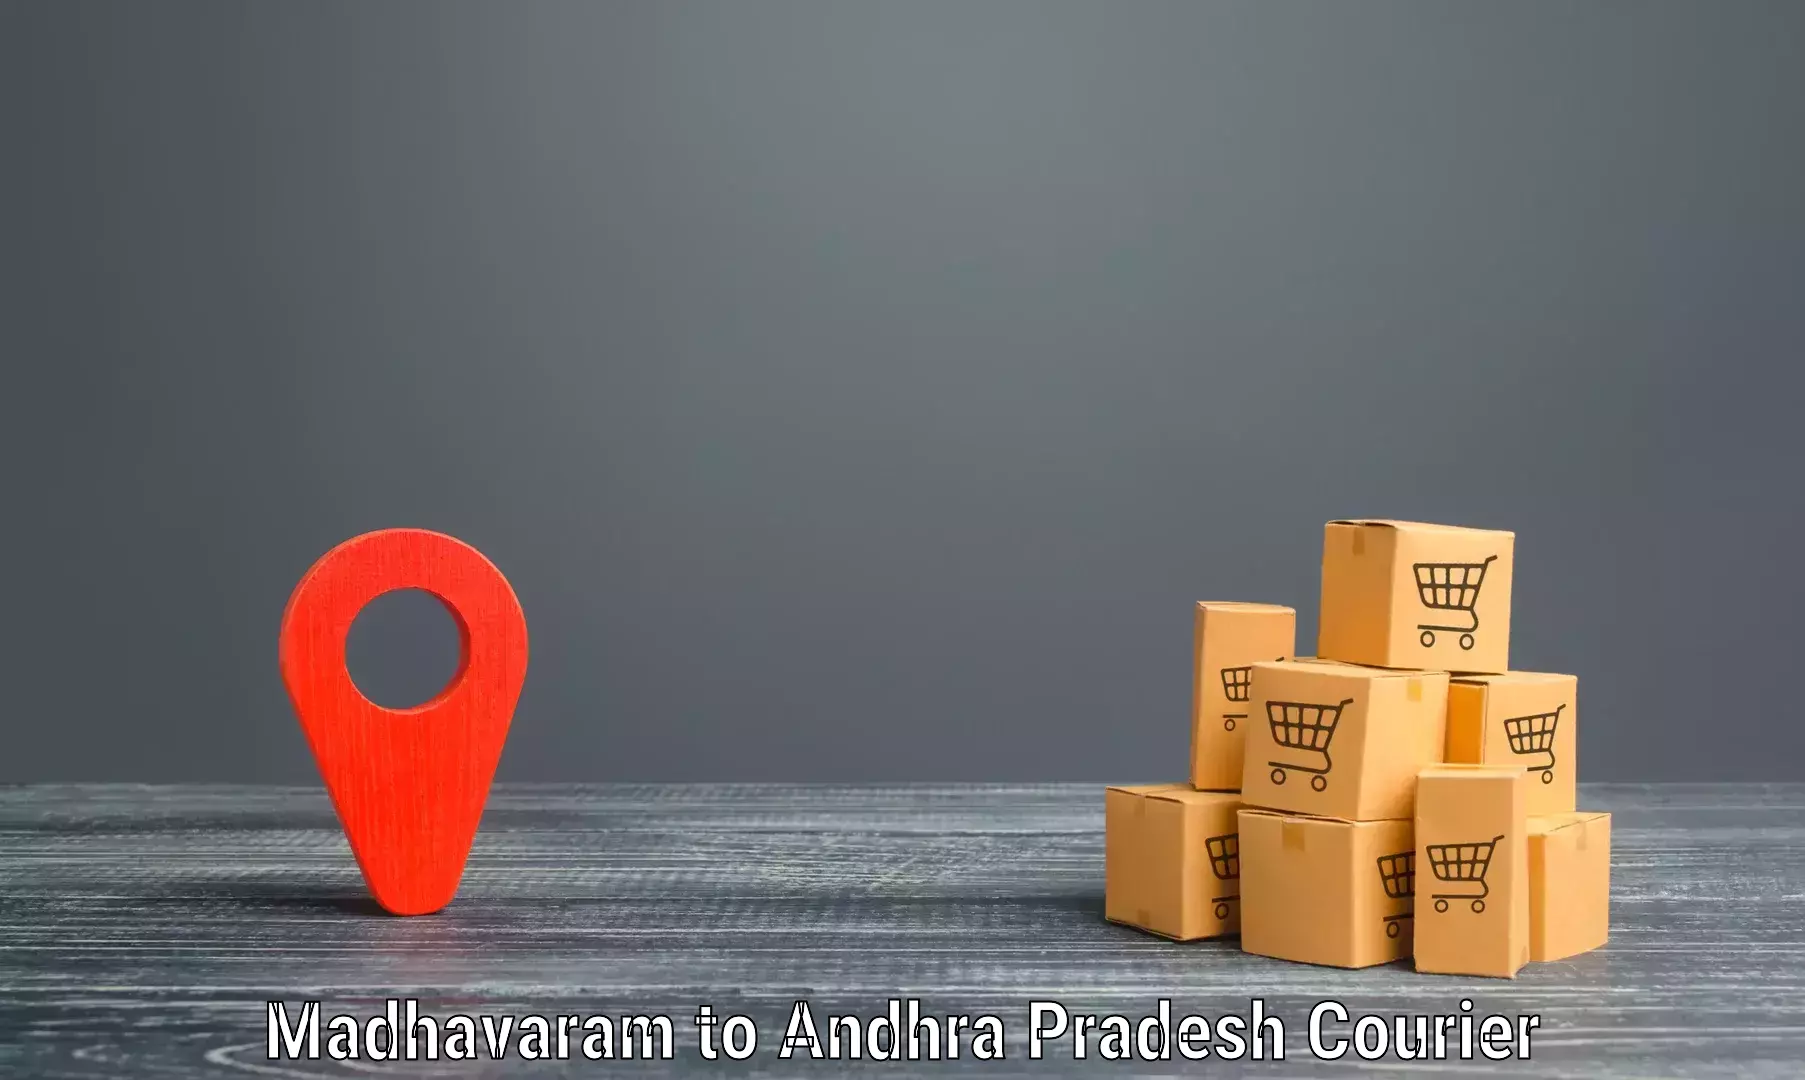 High-capacity parcel service Madhavaram to Venkatagiri